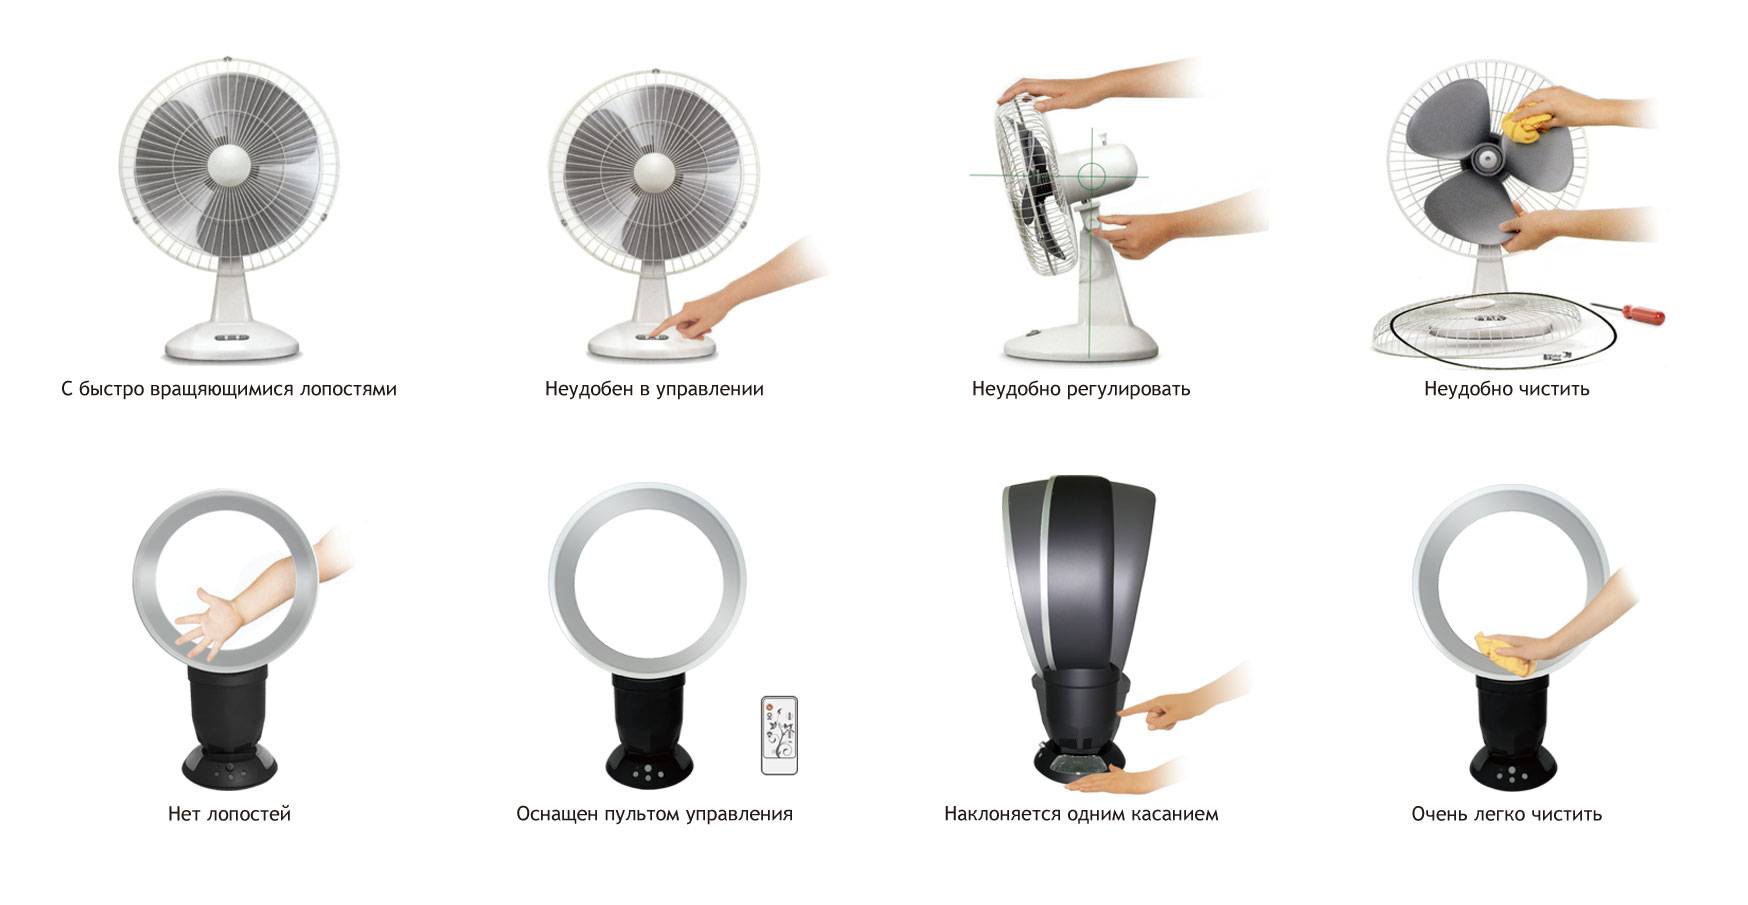 Безлопастной вентилятор: принцип работы и преимущества